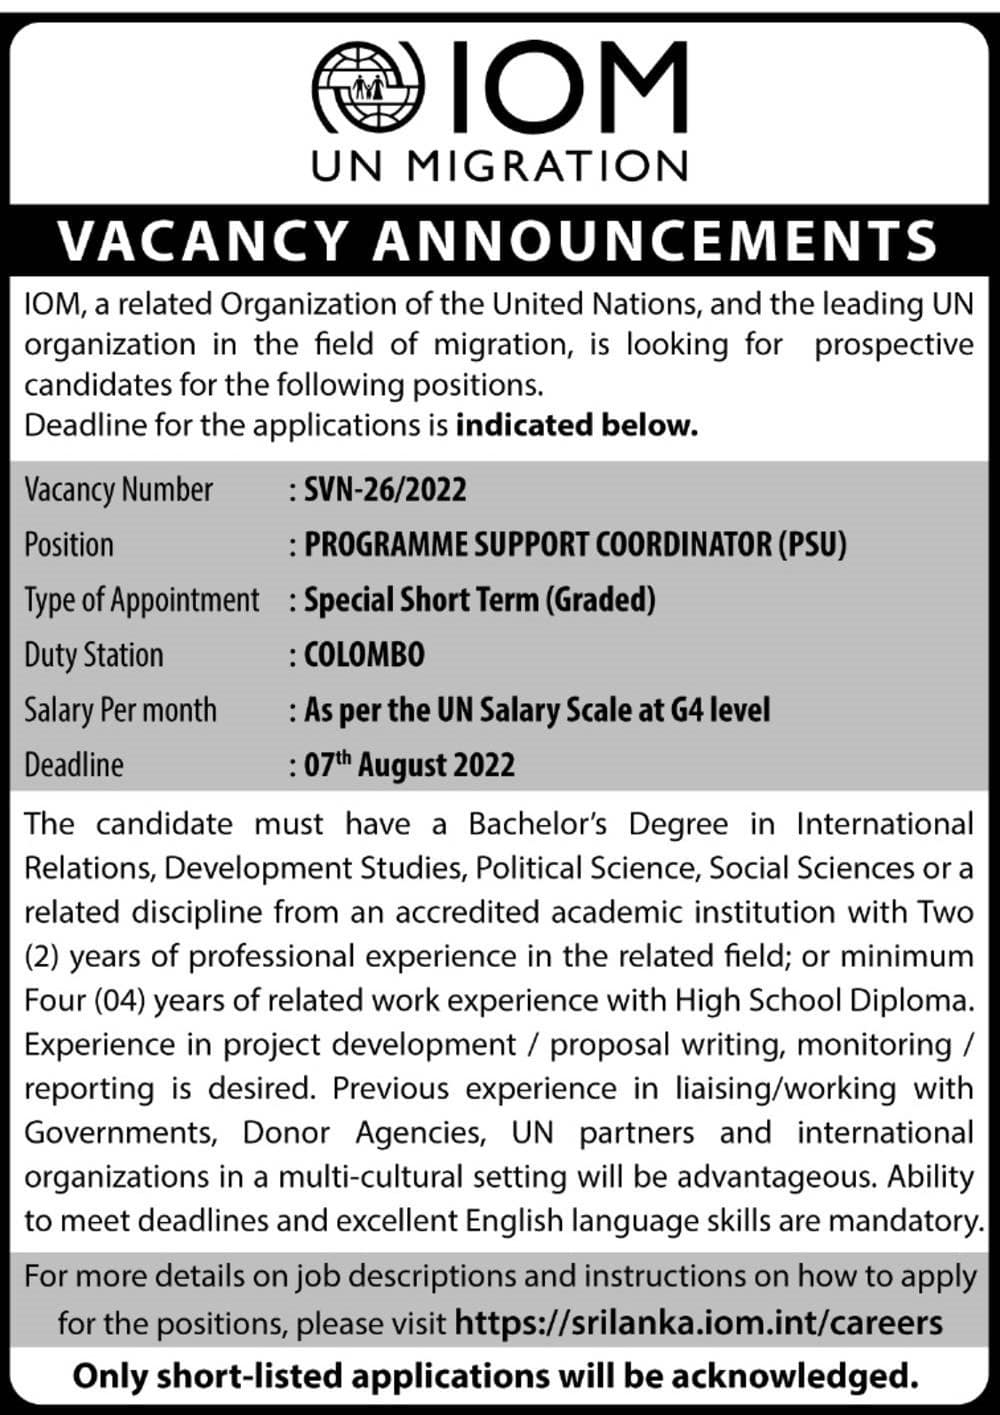 Programme Support Coordinator Job Vacancy in IOM UN Migration Jobs Vacancies